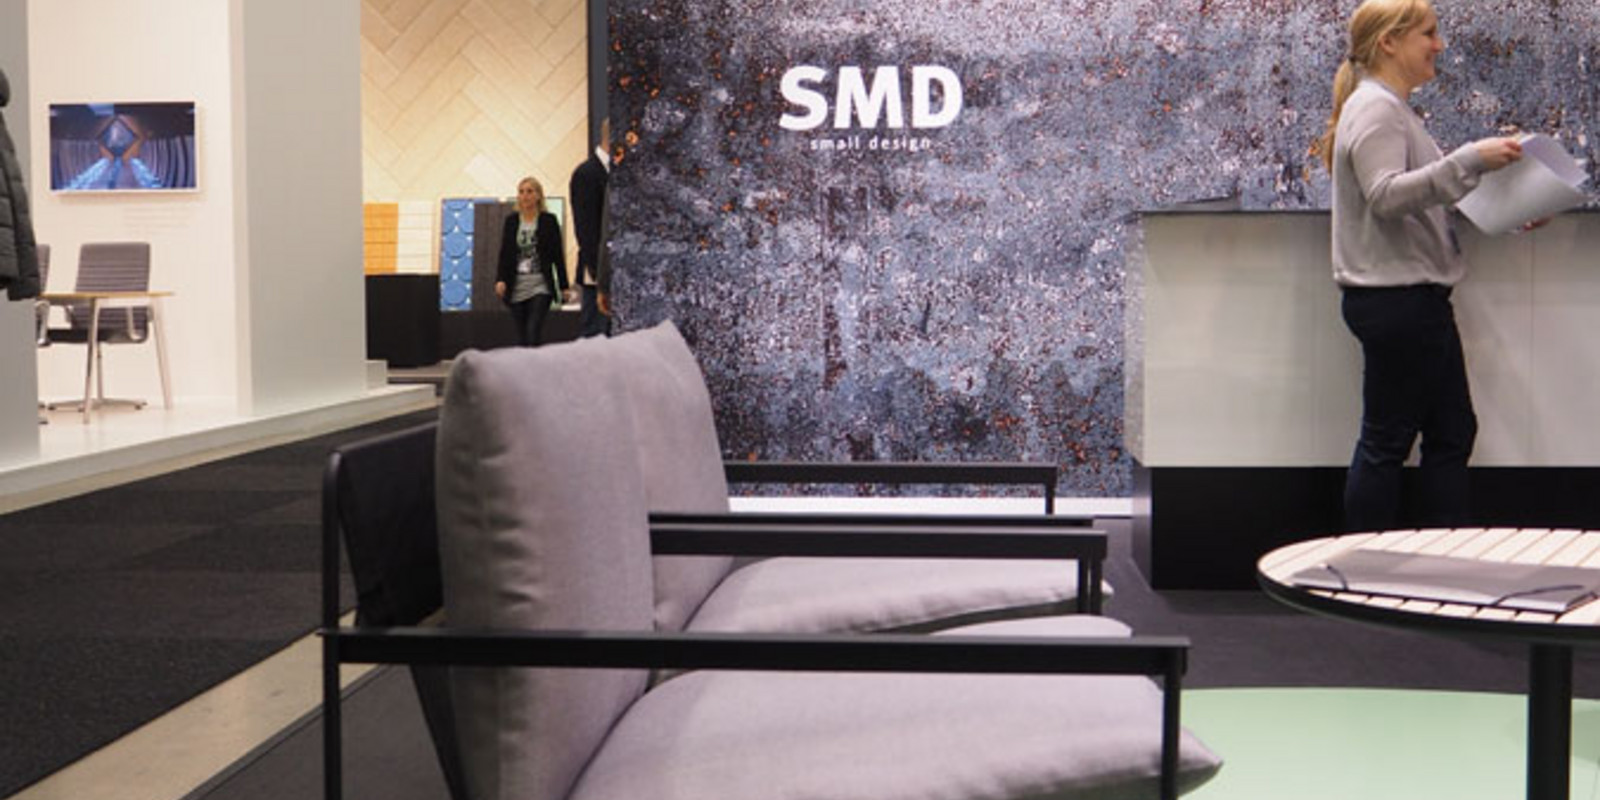 Stockholm Furniture Fair - Small Design 2 Bild 47